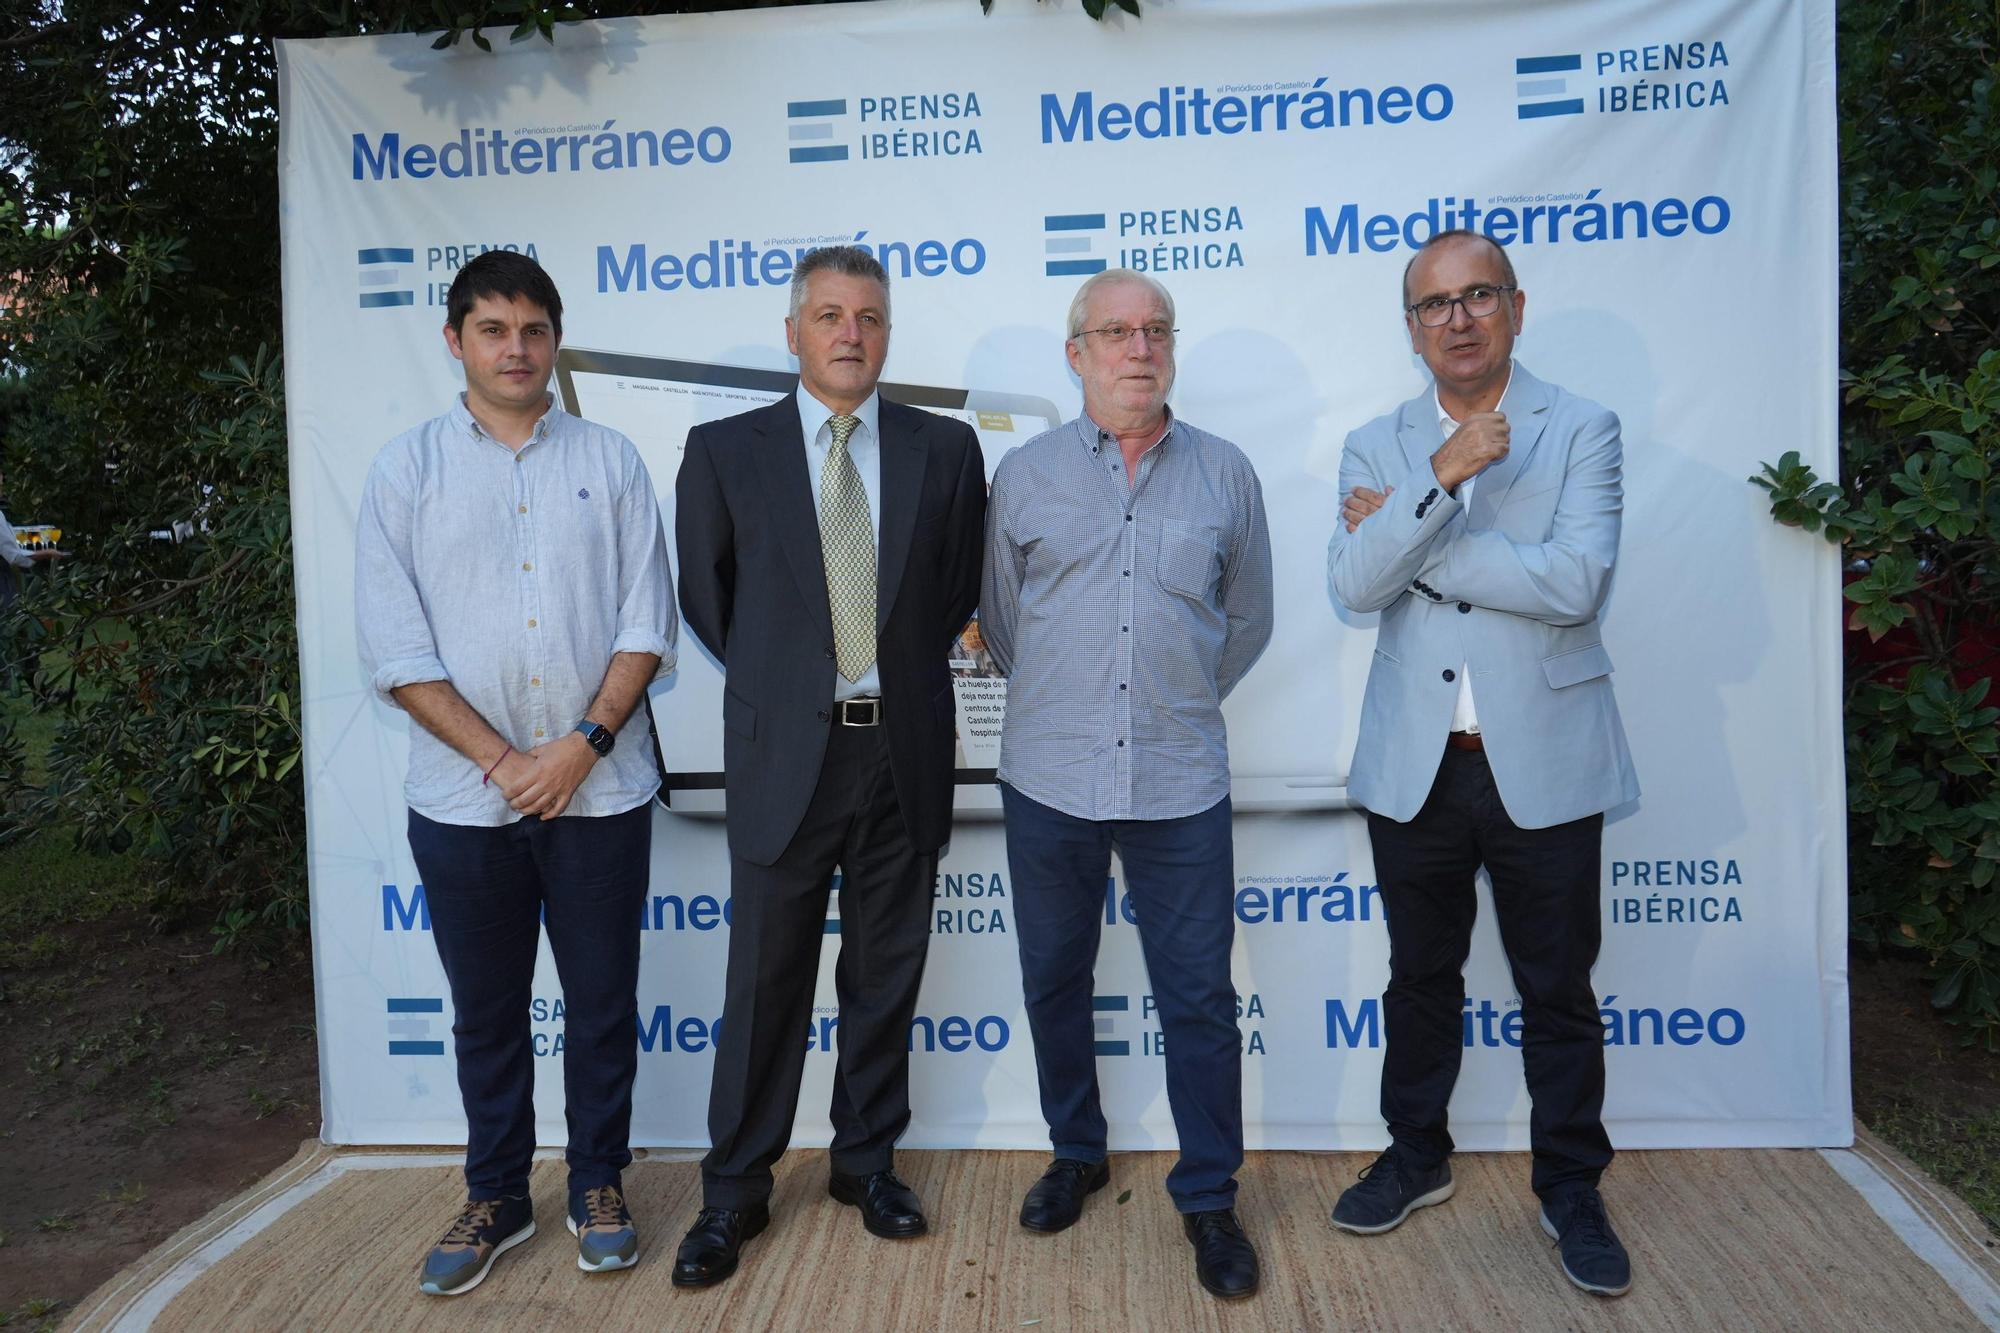 Las mejores imágenes de la cena de alcaldes de 'Mediterráneo'